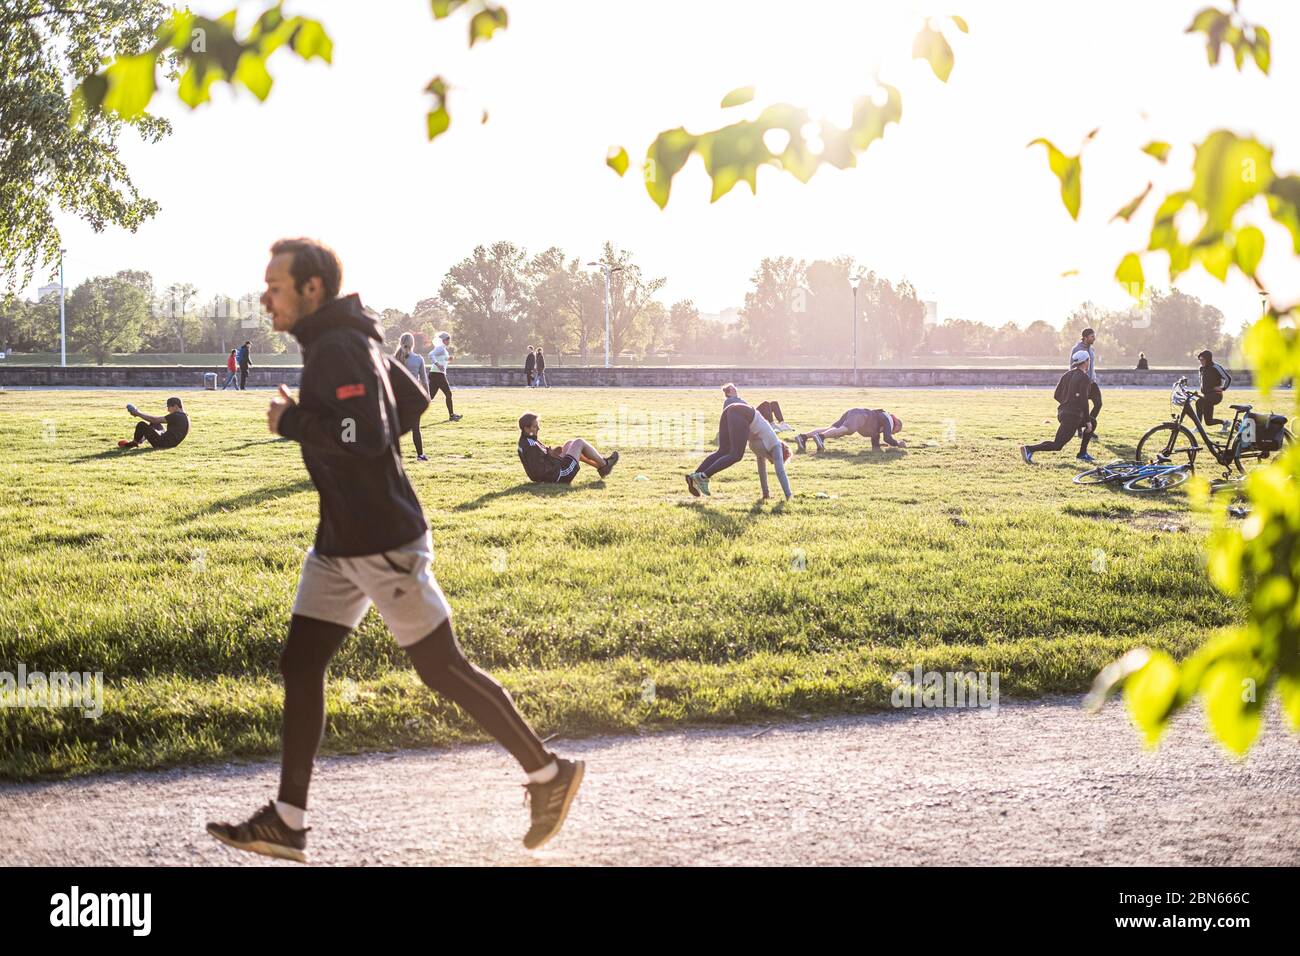 Sport mit Abstand im Freien zu Coronazeiten im Rheinpark, Düsseldorf. Foto de stock